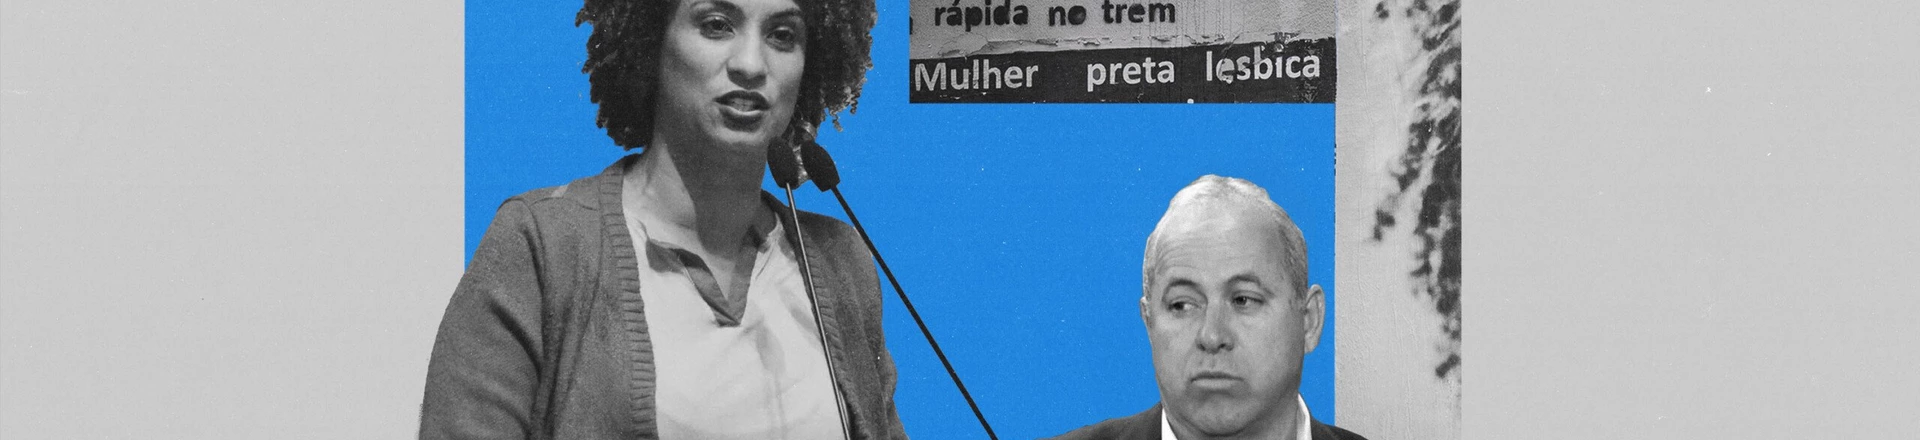 Caso Marielle: campanha política liga suspeito de envolvimento no crime com família Brazão